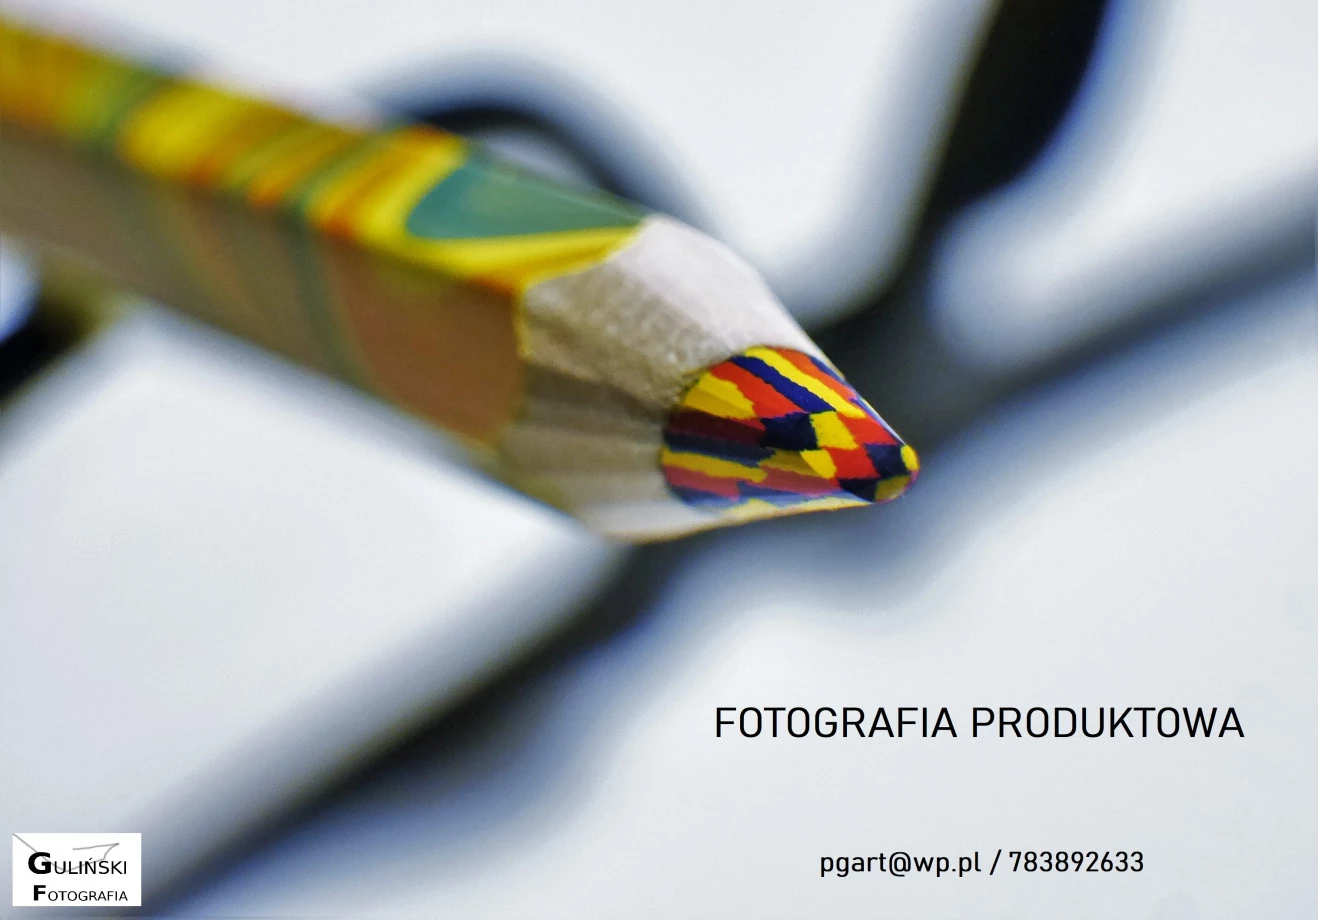 zdjęcia katowice fotograf pg-art-piotr-gulinski portfolio zdjecia reklamowe reklama